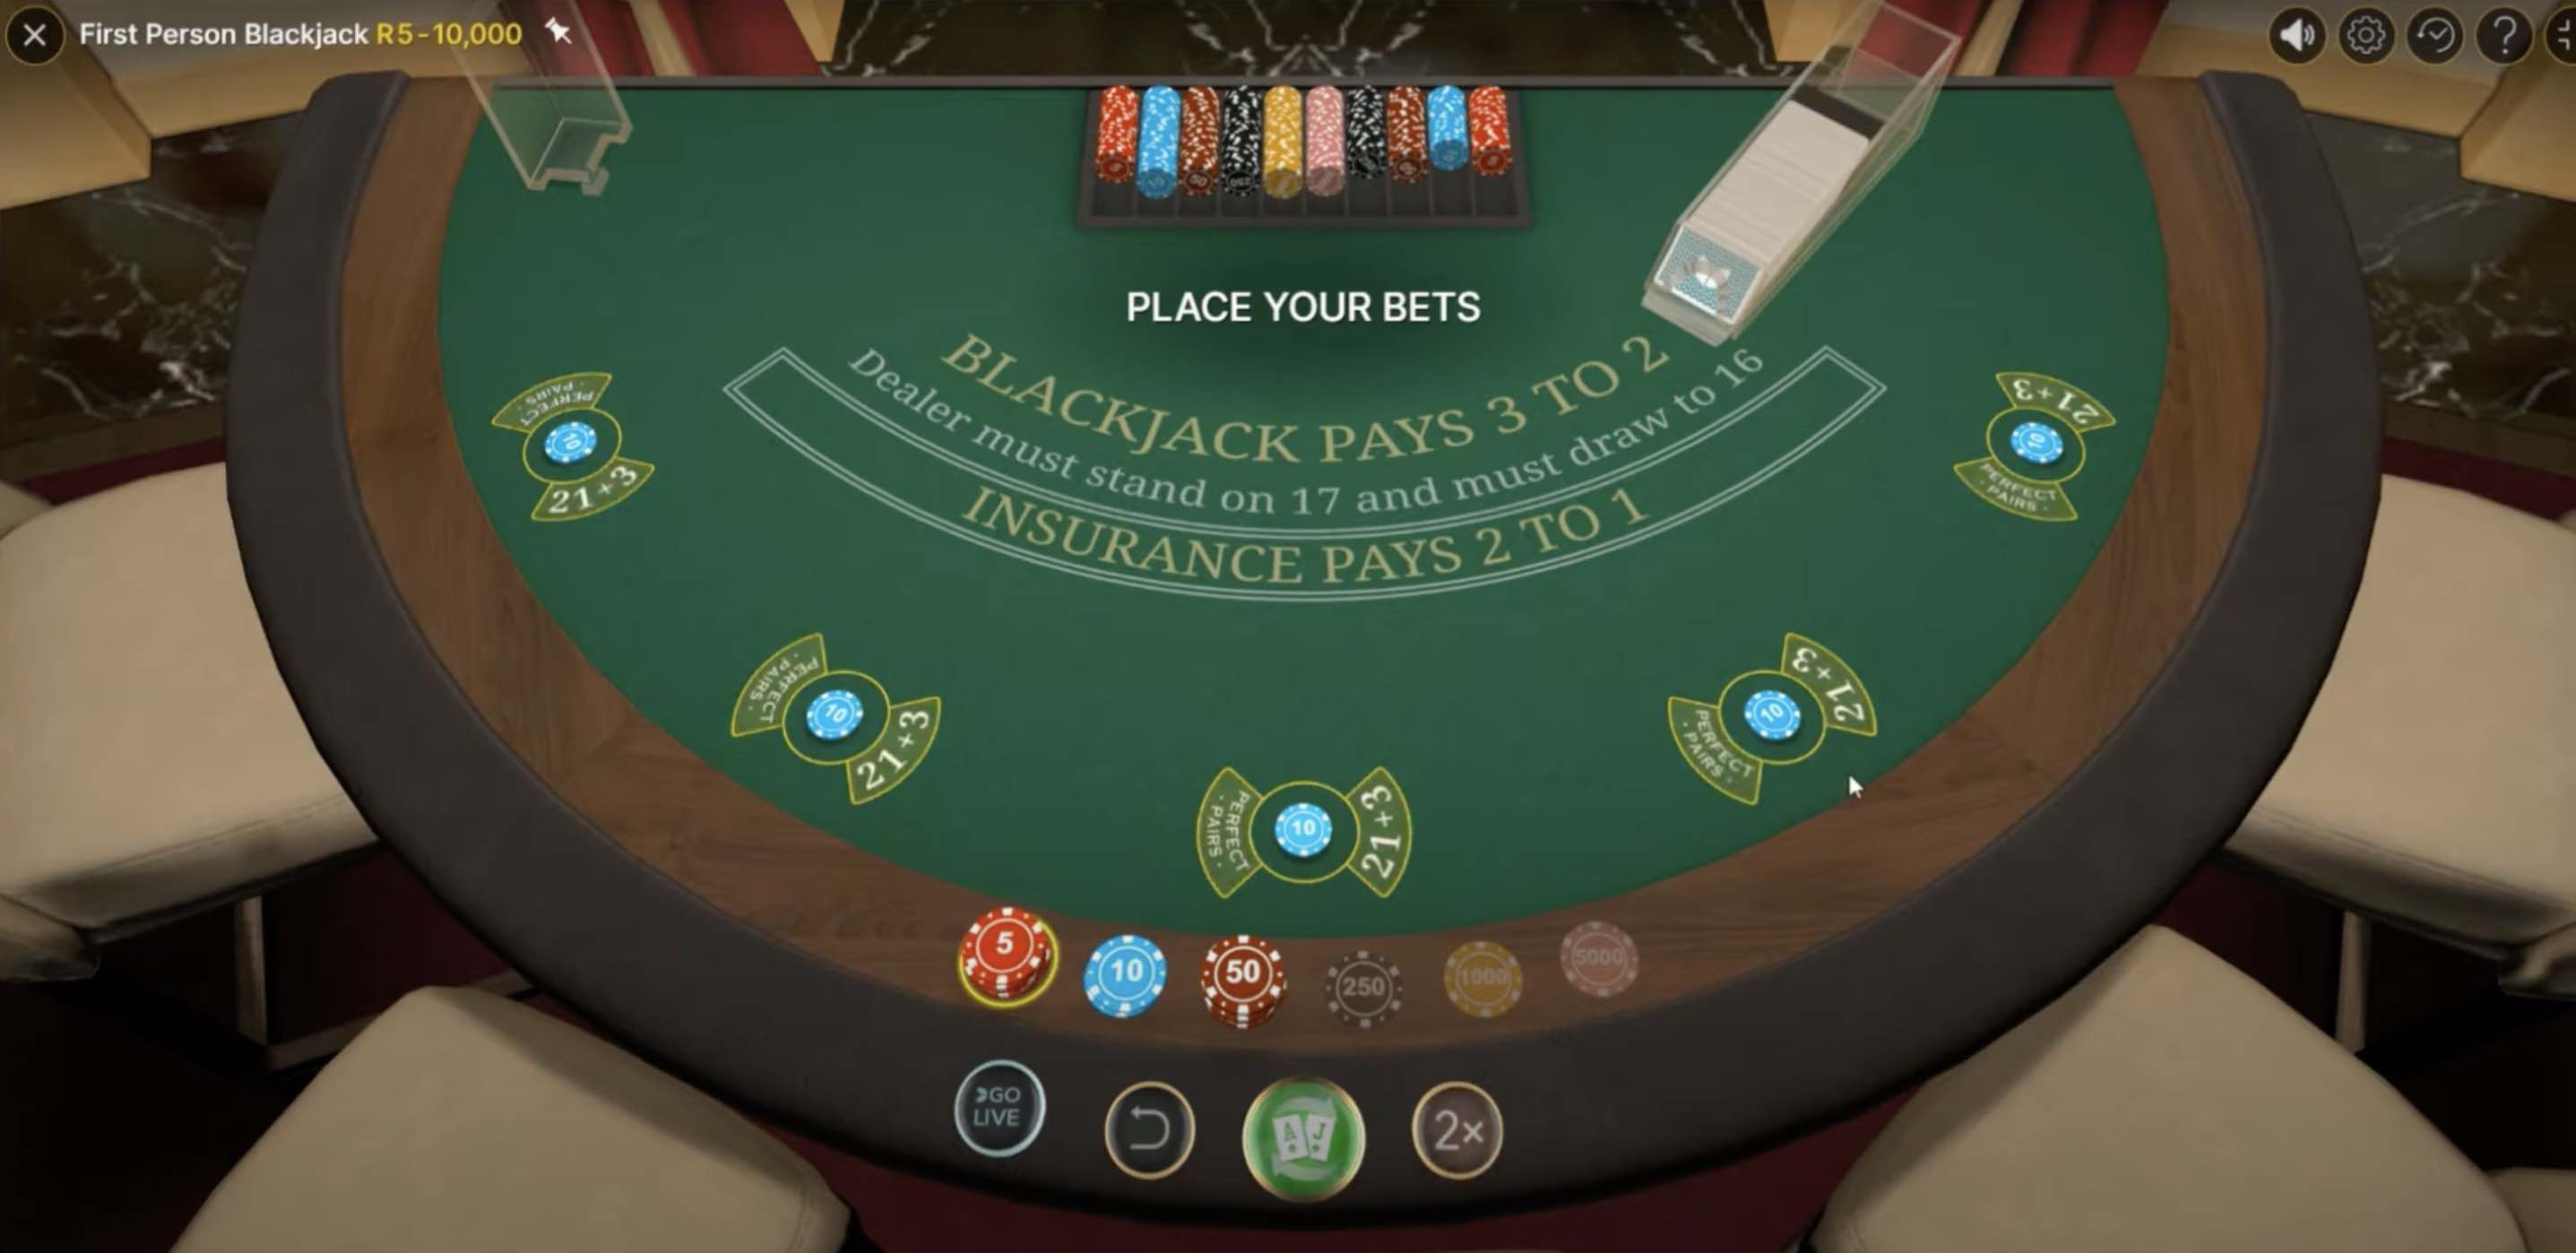 Así se juega blackjack en los casinos online - Cómo ganar en el Blackjack -  CLASE 31 